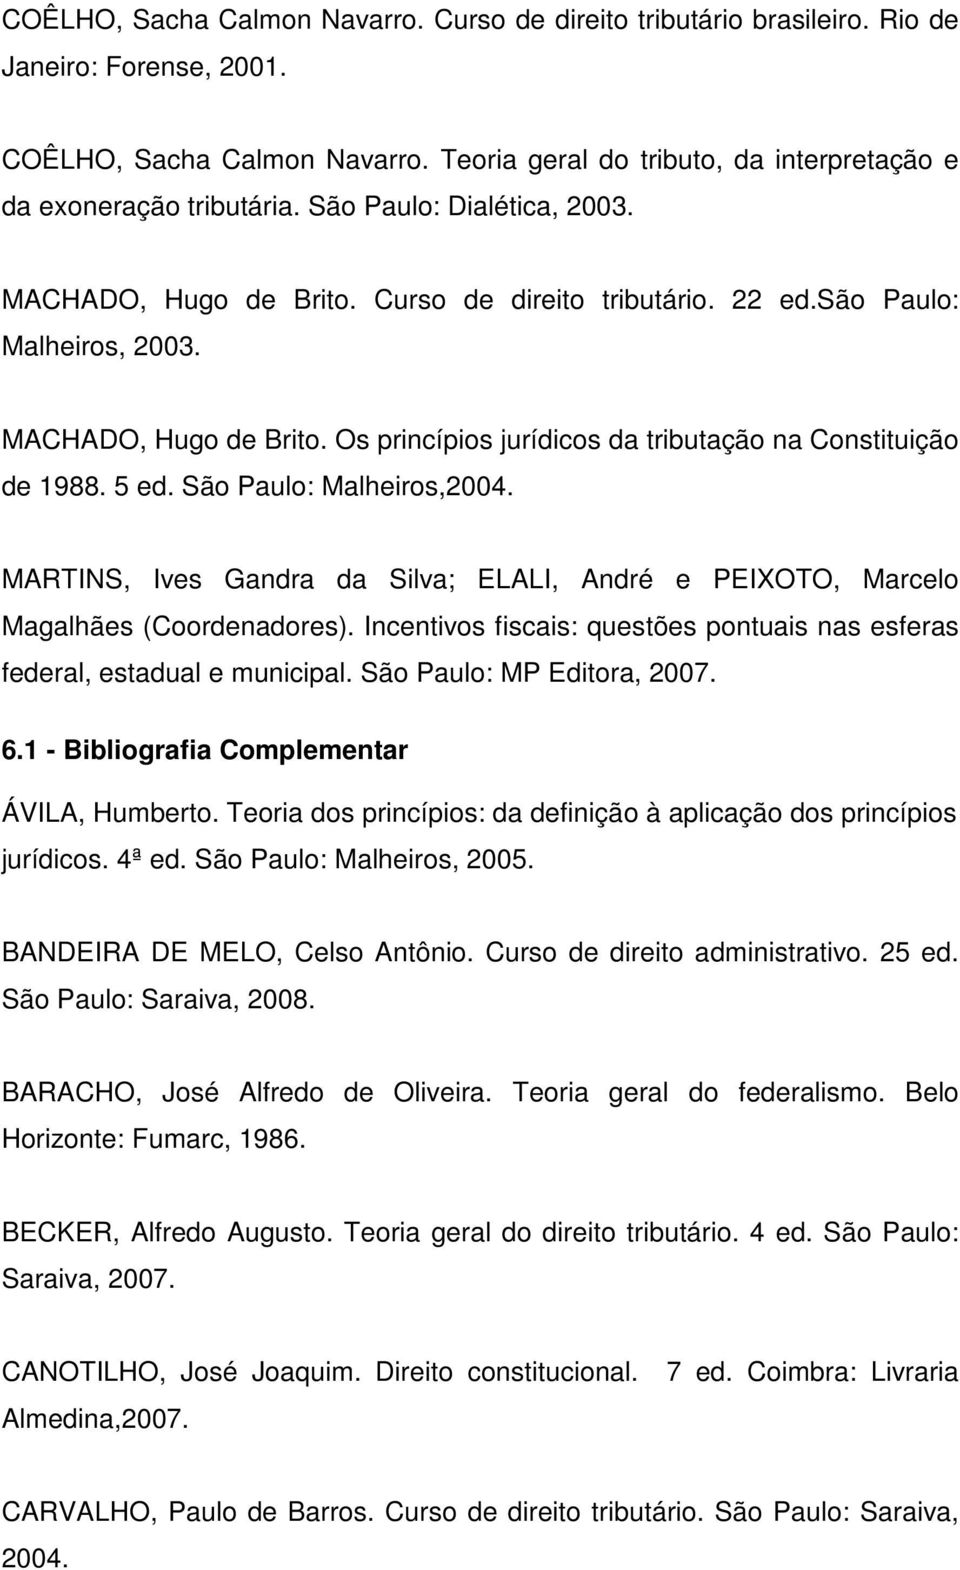 5 ed. São Paulo: Malheiros,2004. MARTINS, Ives Gandra da Silva; ELALI, André e PEIXOTO, Marcelo Magalhães (Coordenadores).